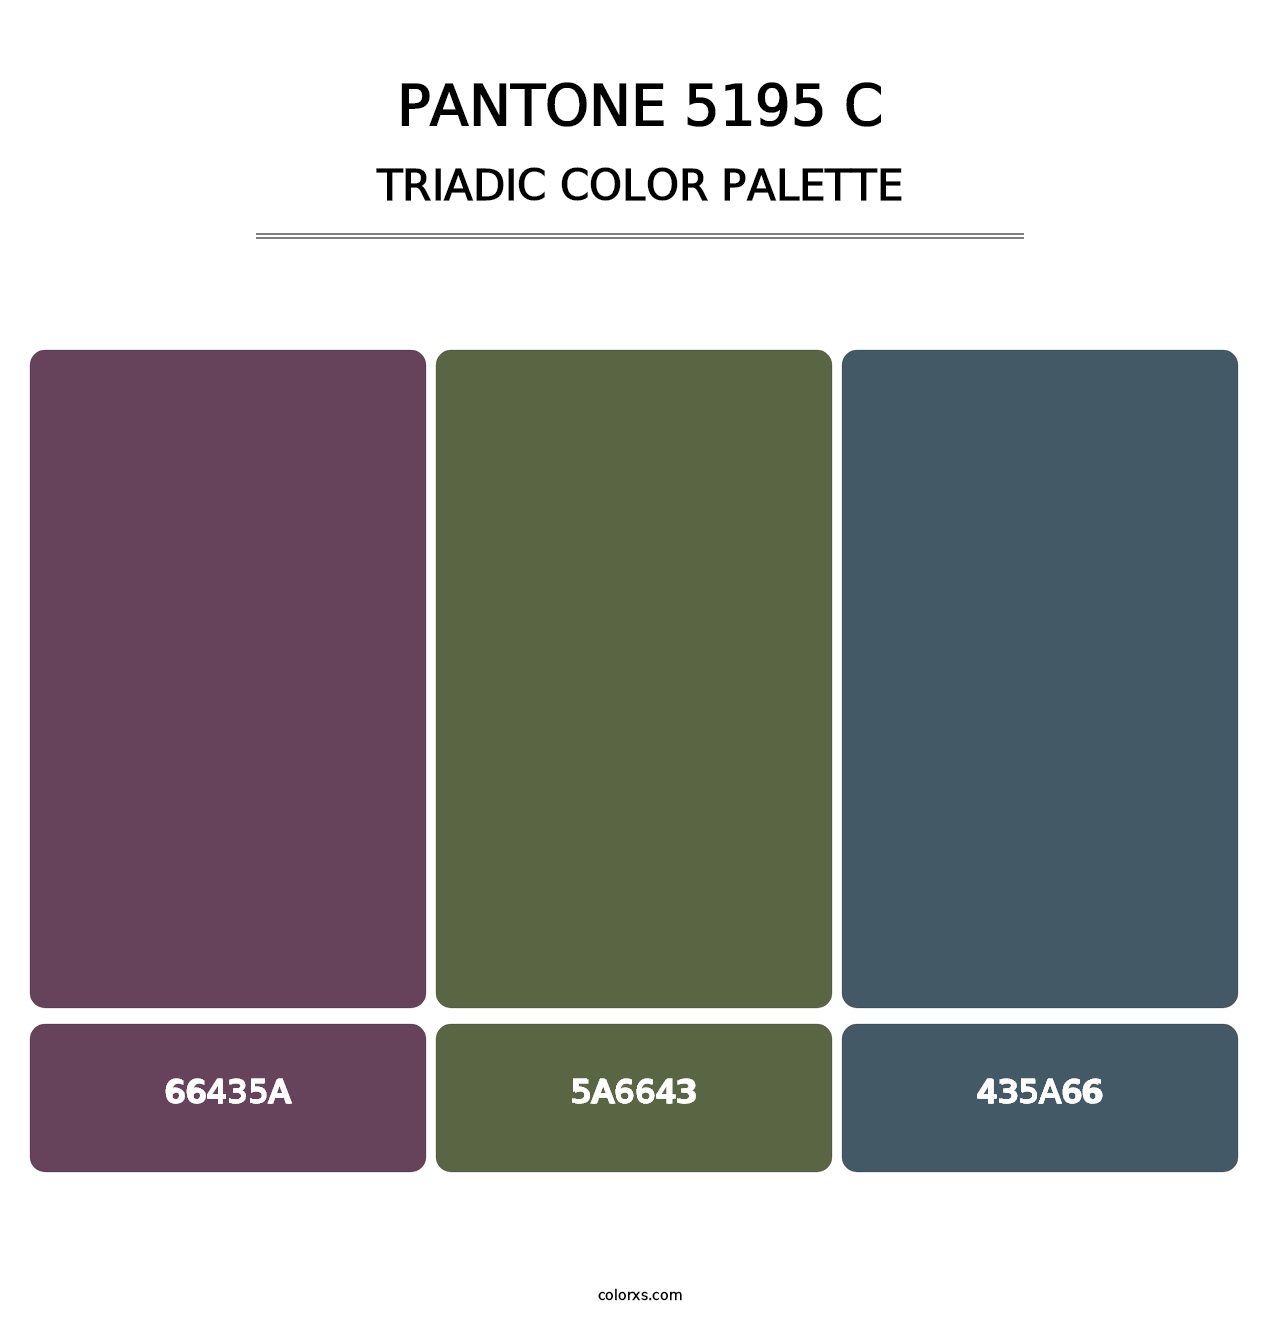 PANTONE 5195 C - Triadic Color Palette